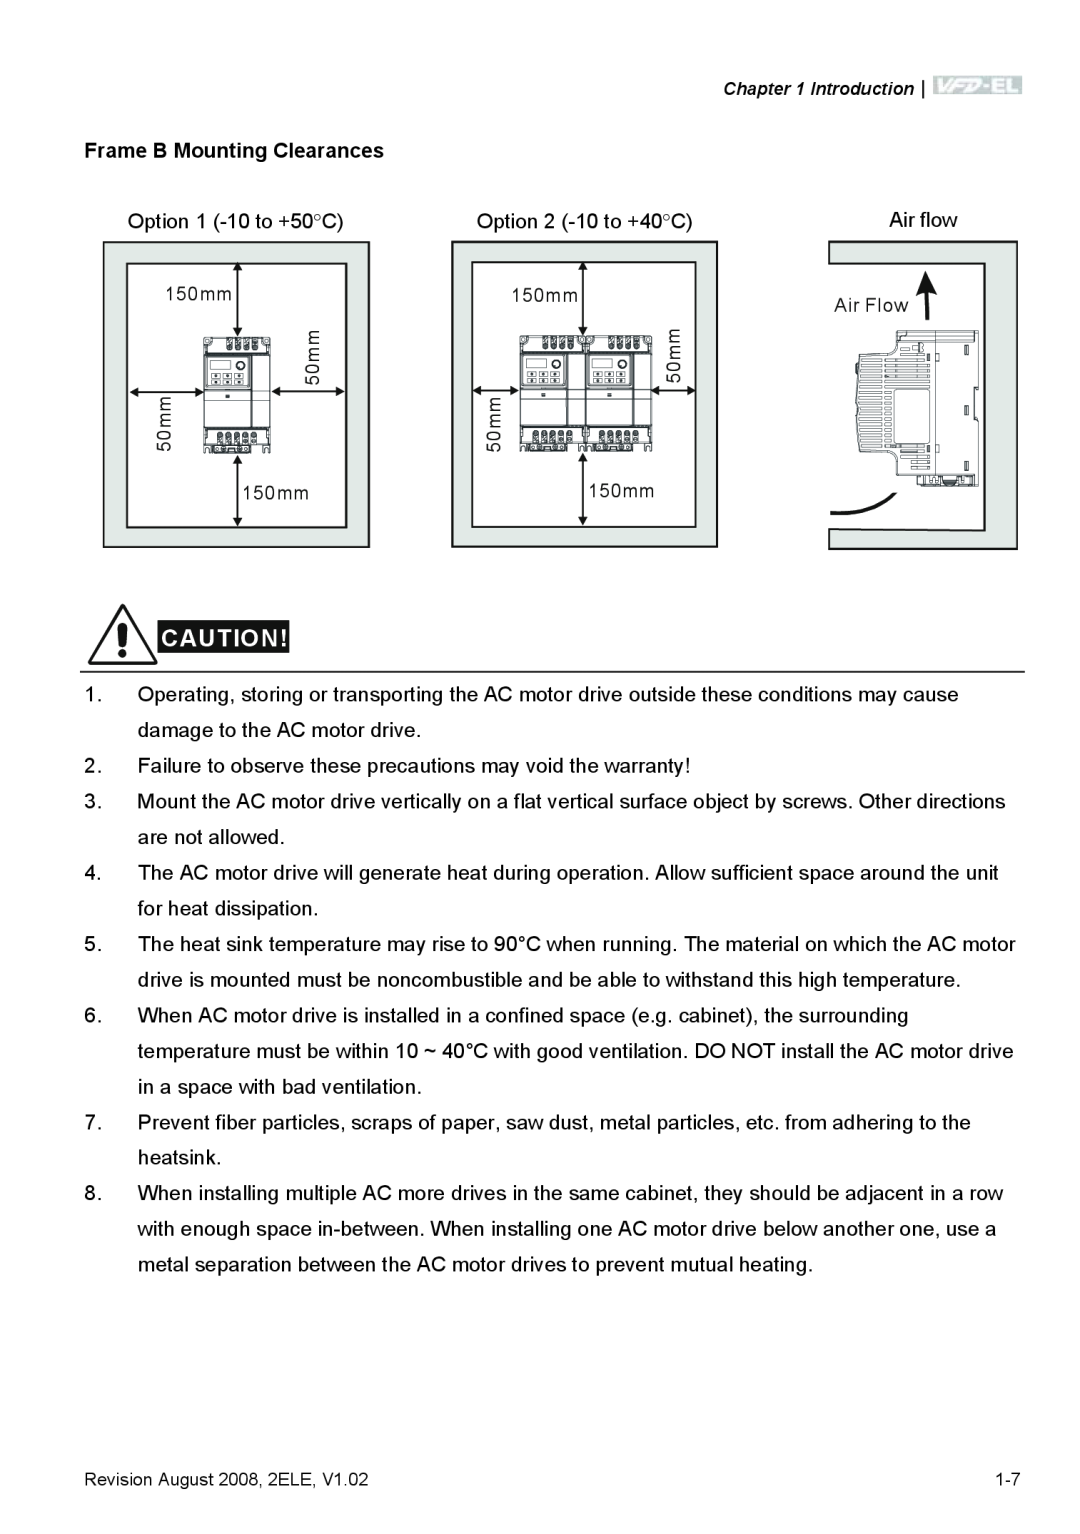 Delta Electronics VFD-EL manual Frame B Mounting Clearances 